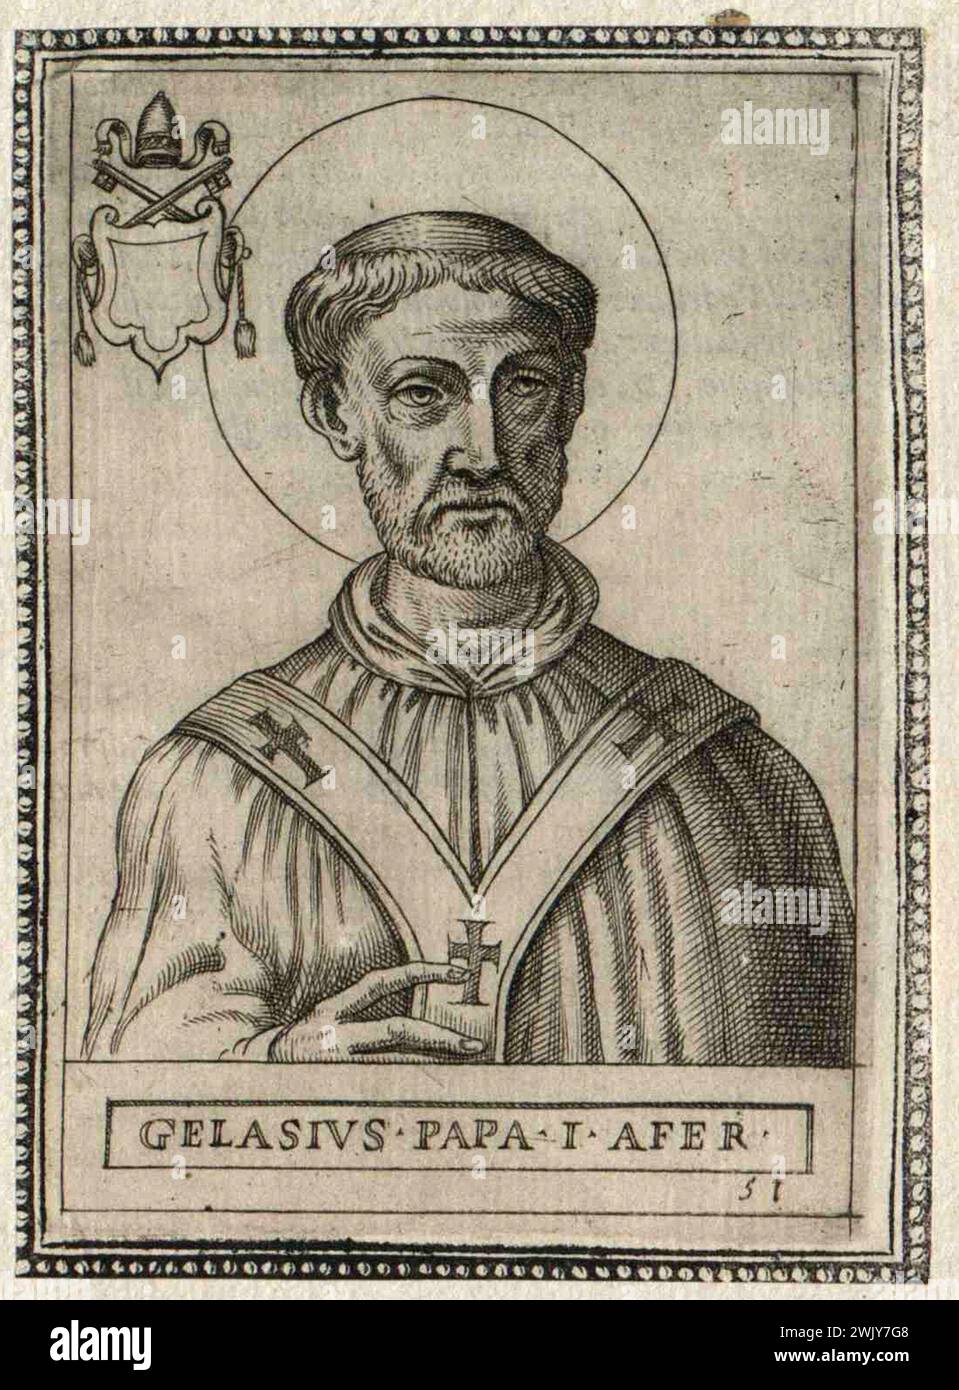 Un'incisione del XV secolo di Papa Gelasio i, pontefice dall'AD492 all'AD496. Era il 49° papa. Era di discendenza berbera e fu l'ultimo papa a venire dal continente africano. Foto Stock